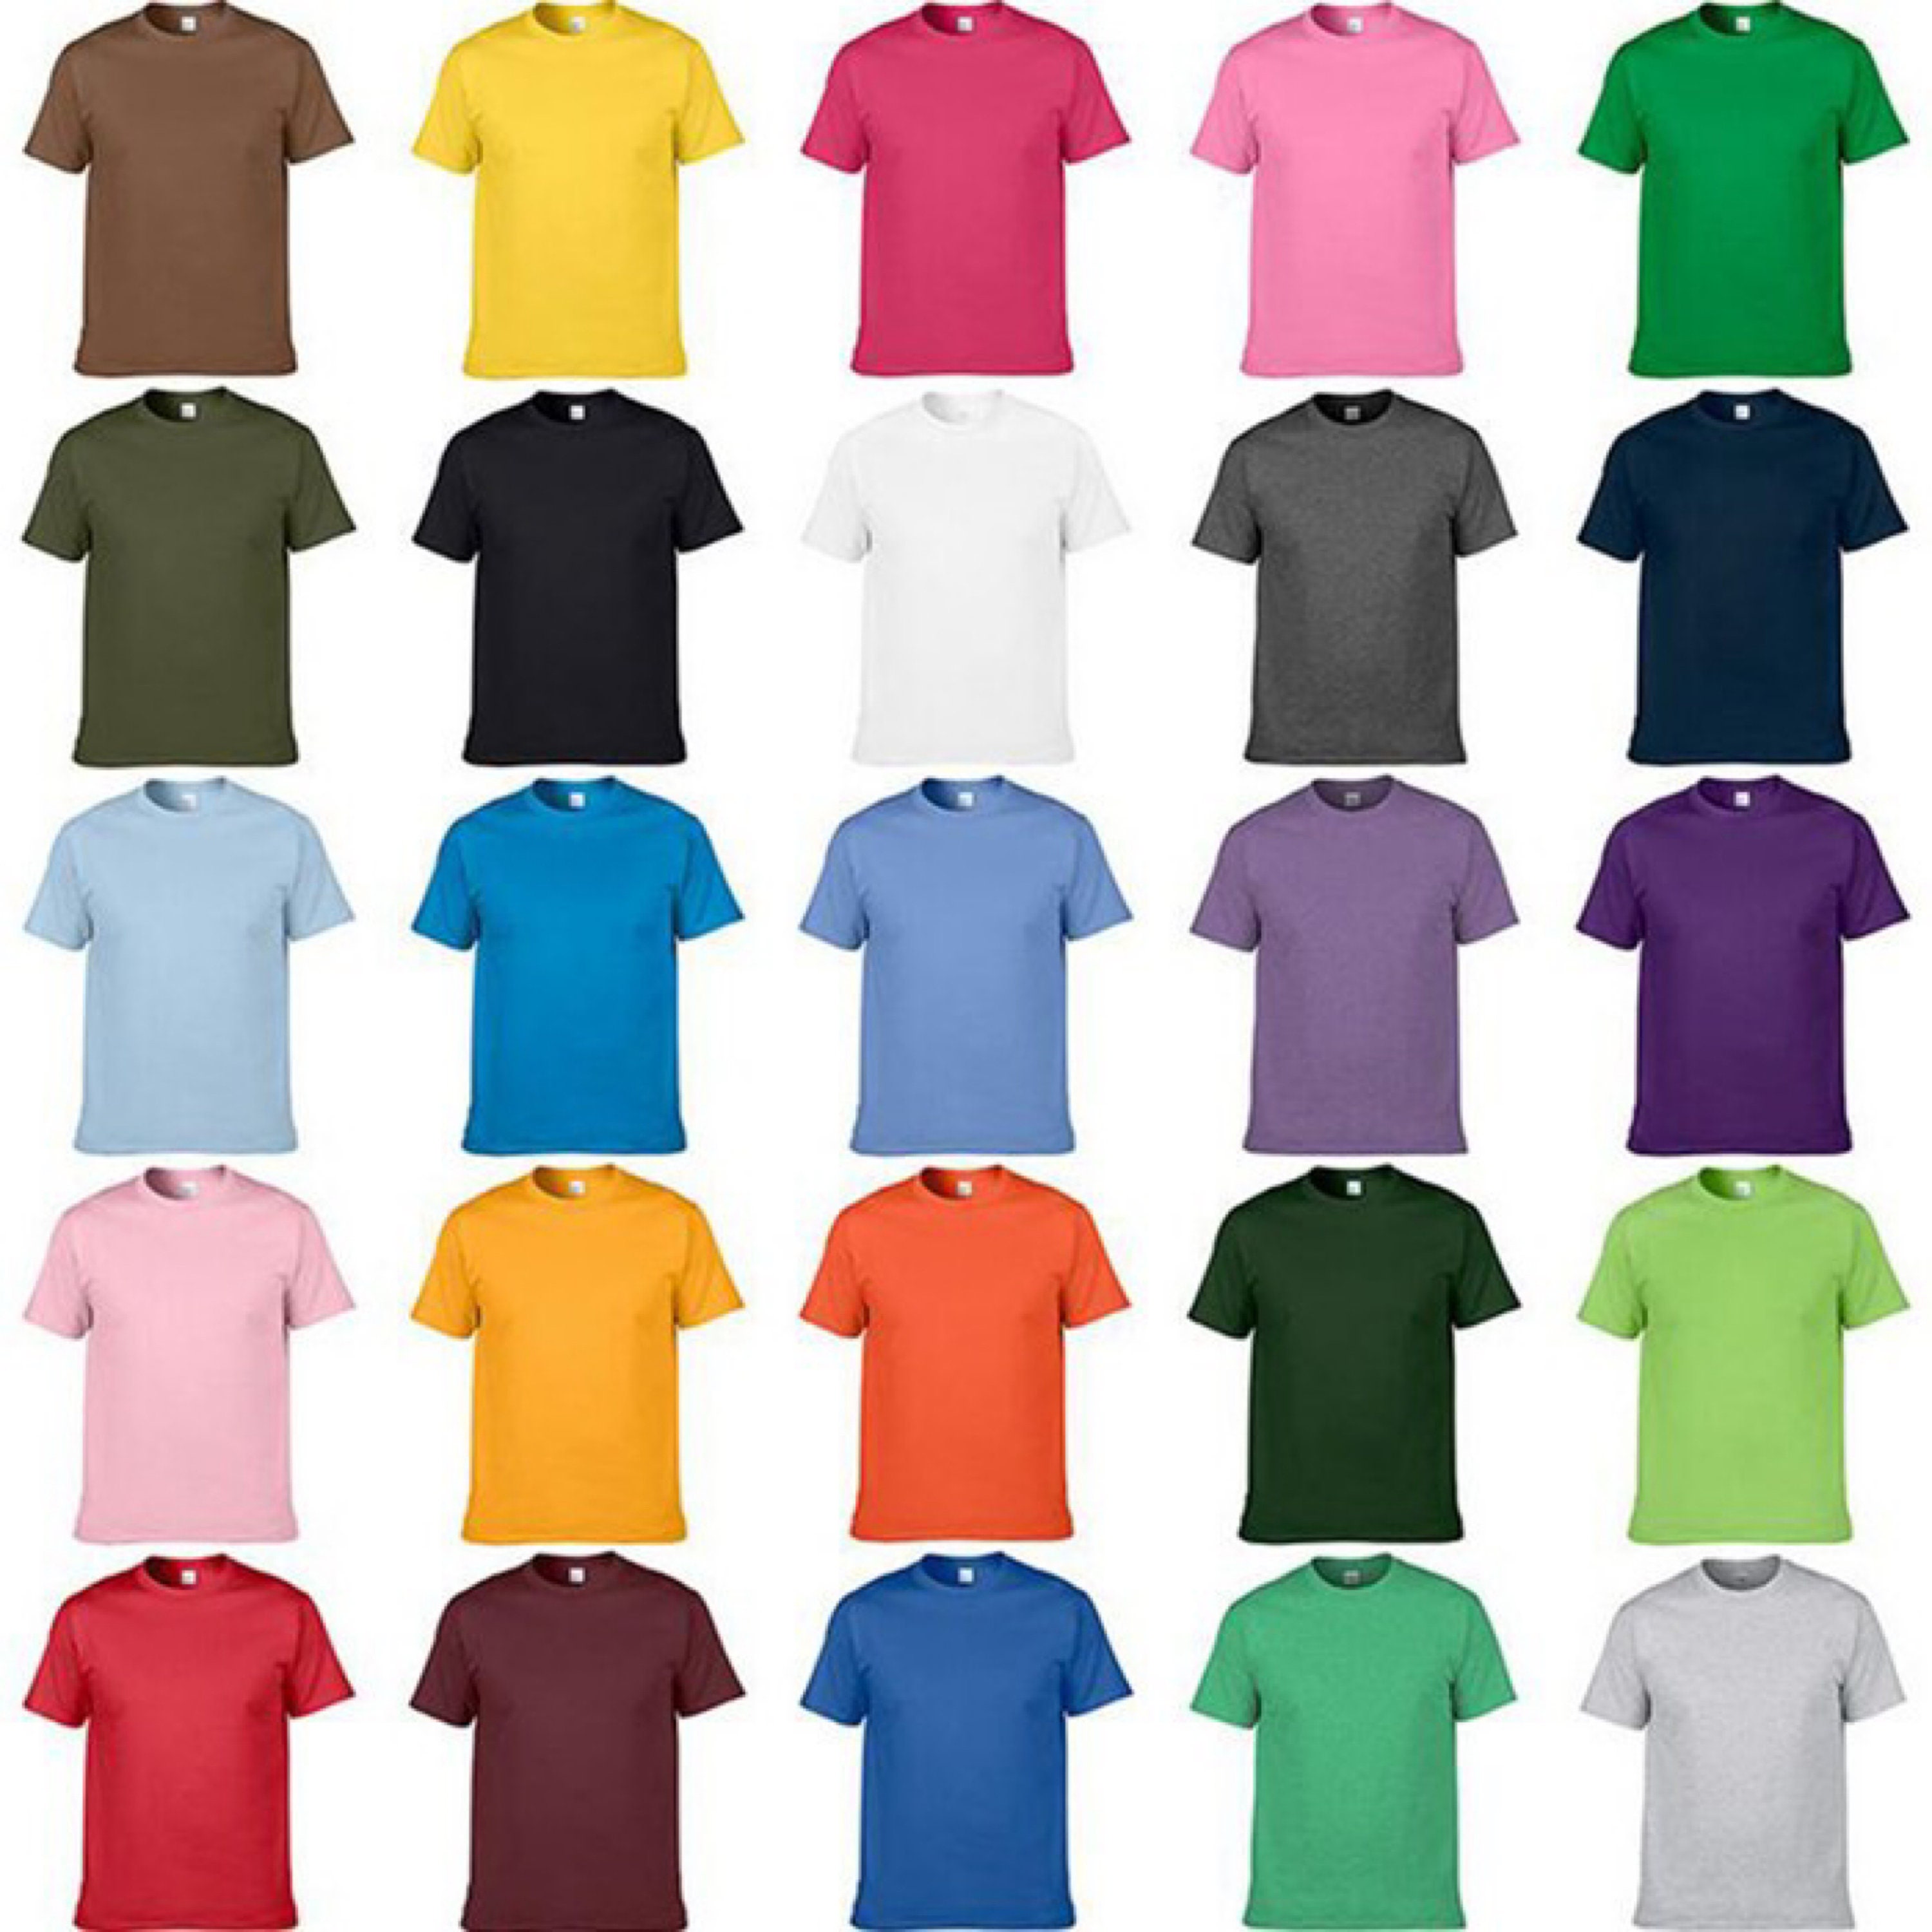 Wholesale T-shirt Distributor Bulk T-shirts vendors | Etsy